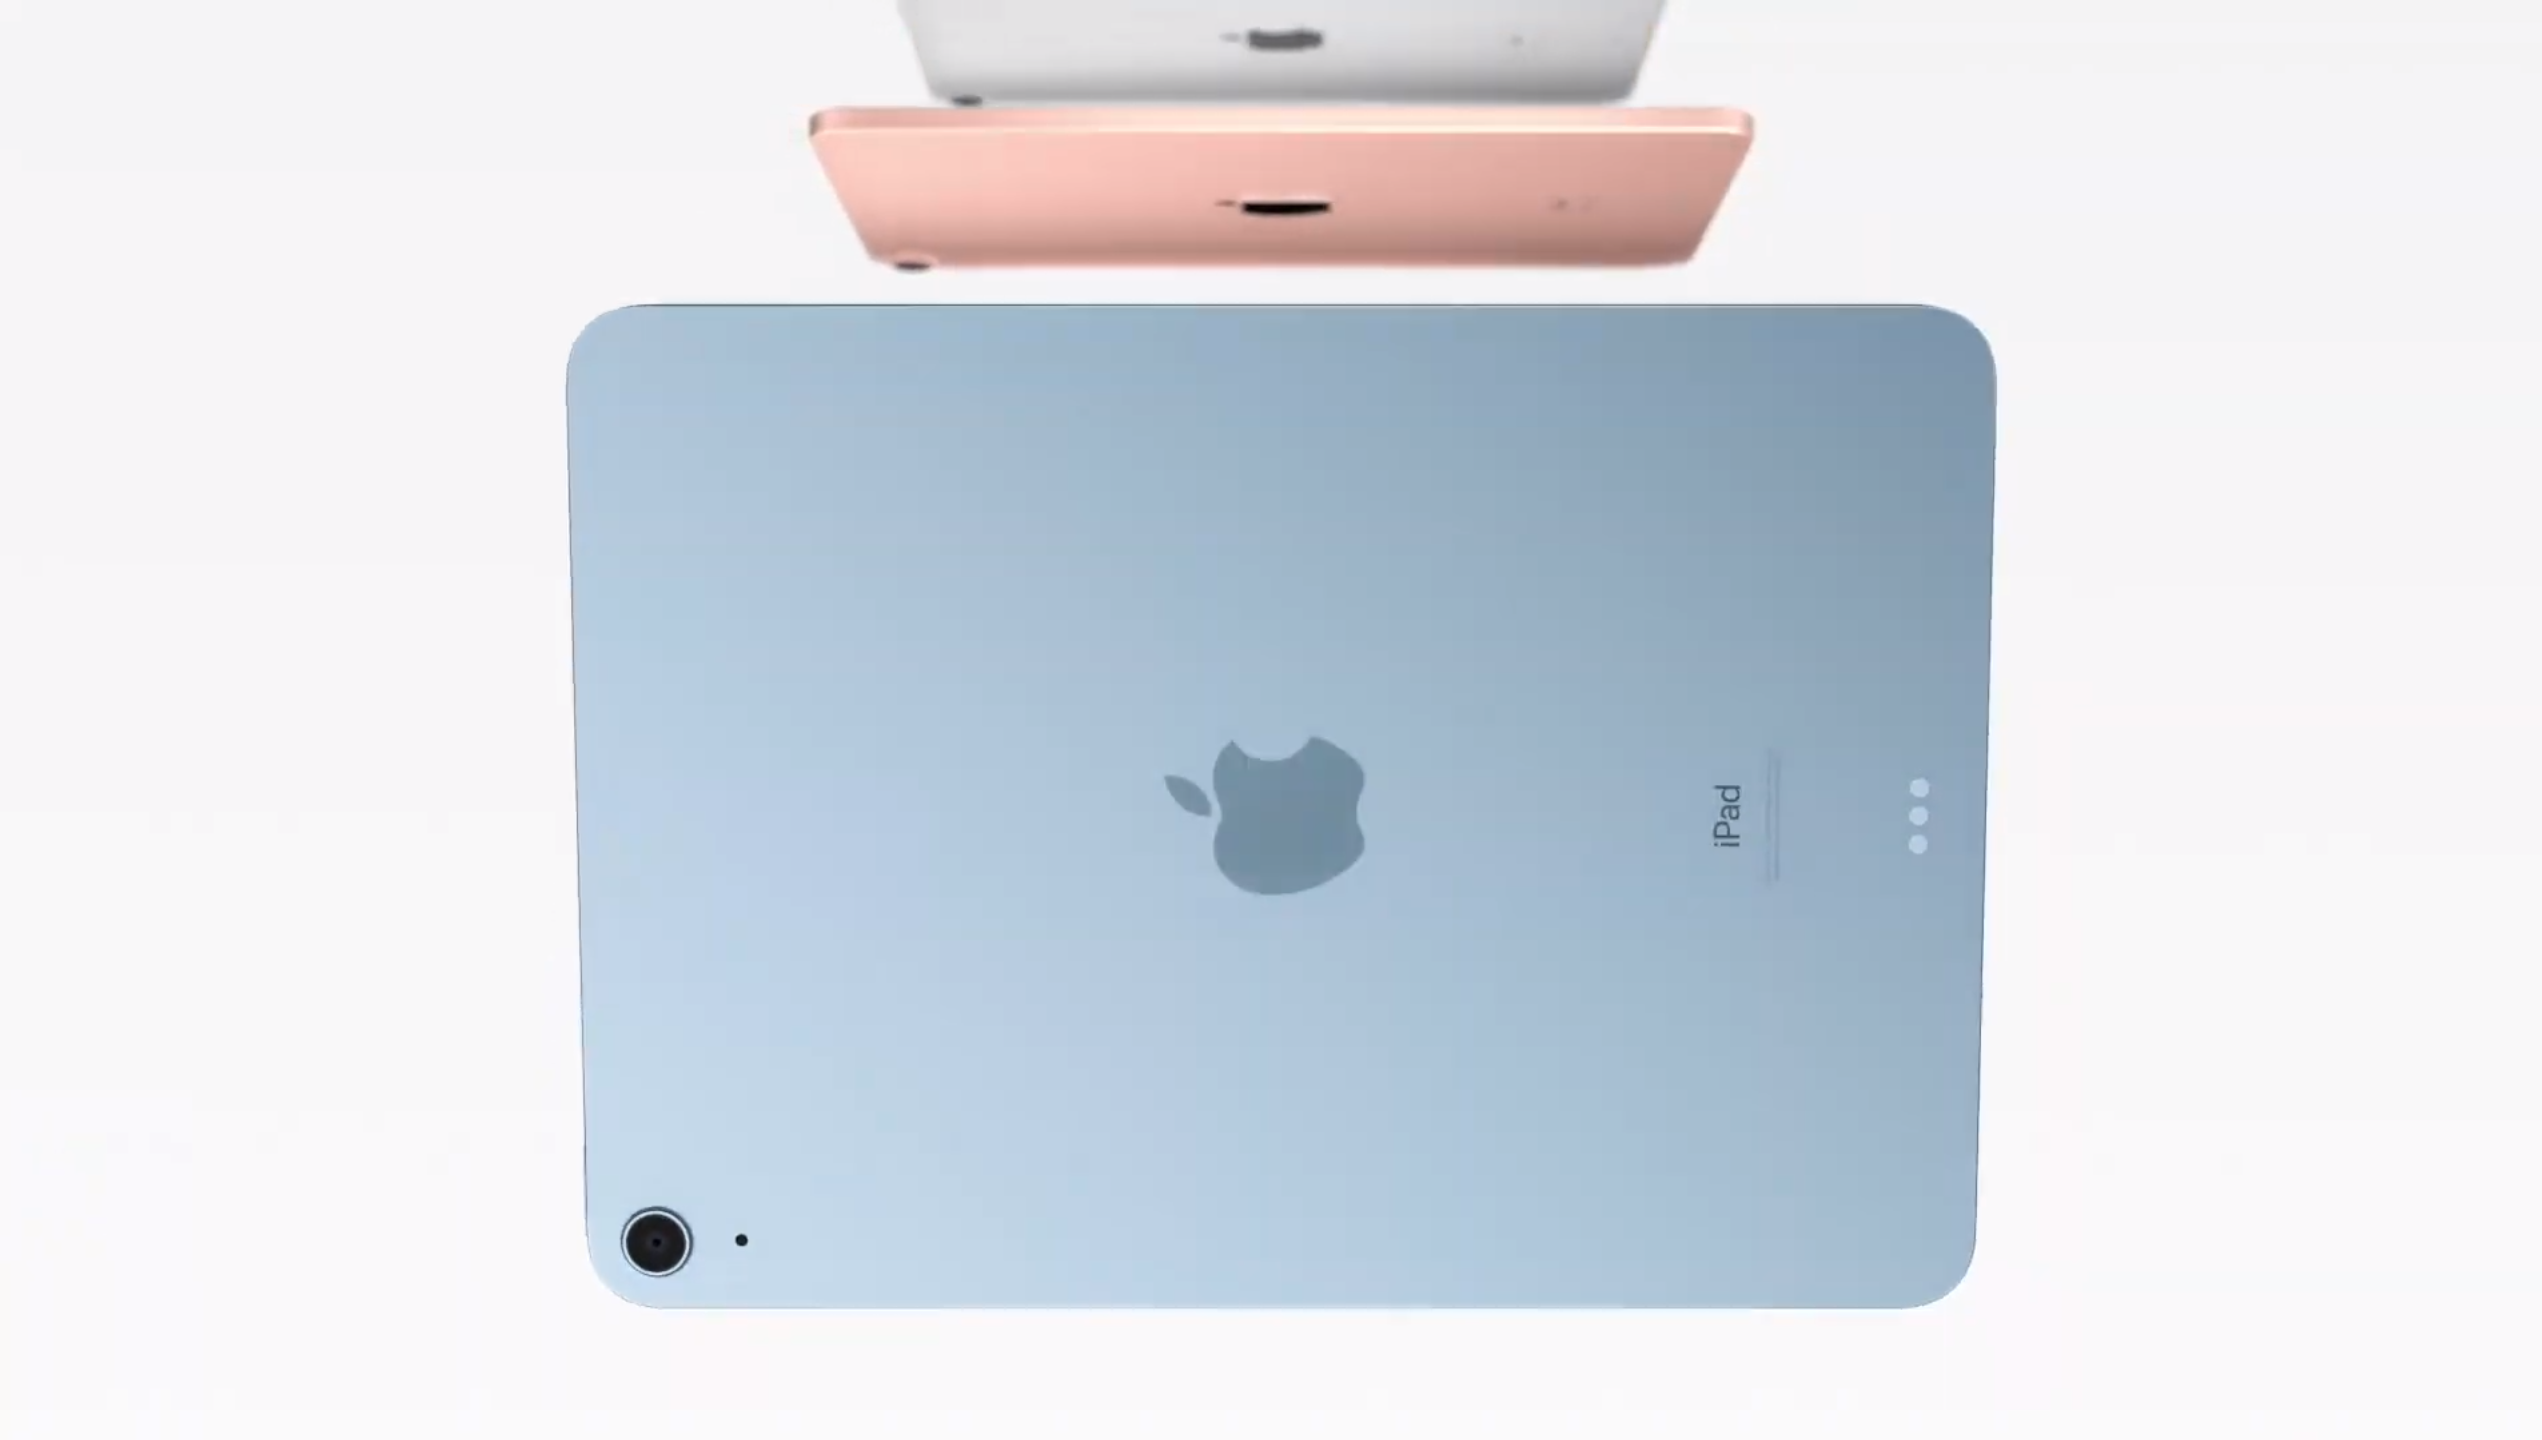 Nuevo iPad Air 4: Características y diseño de iPad Pro a mejor precio -  HardPeach Blog